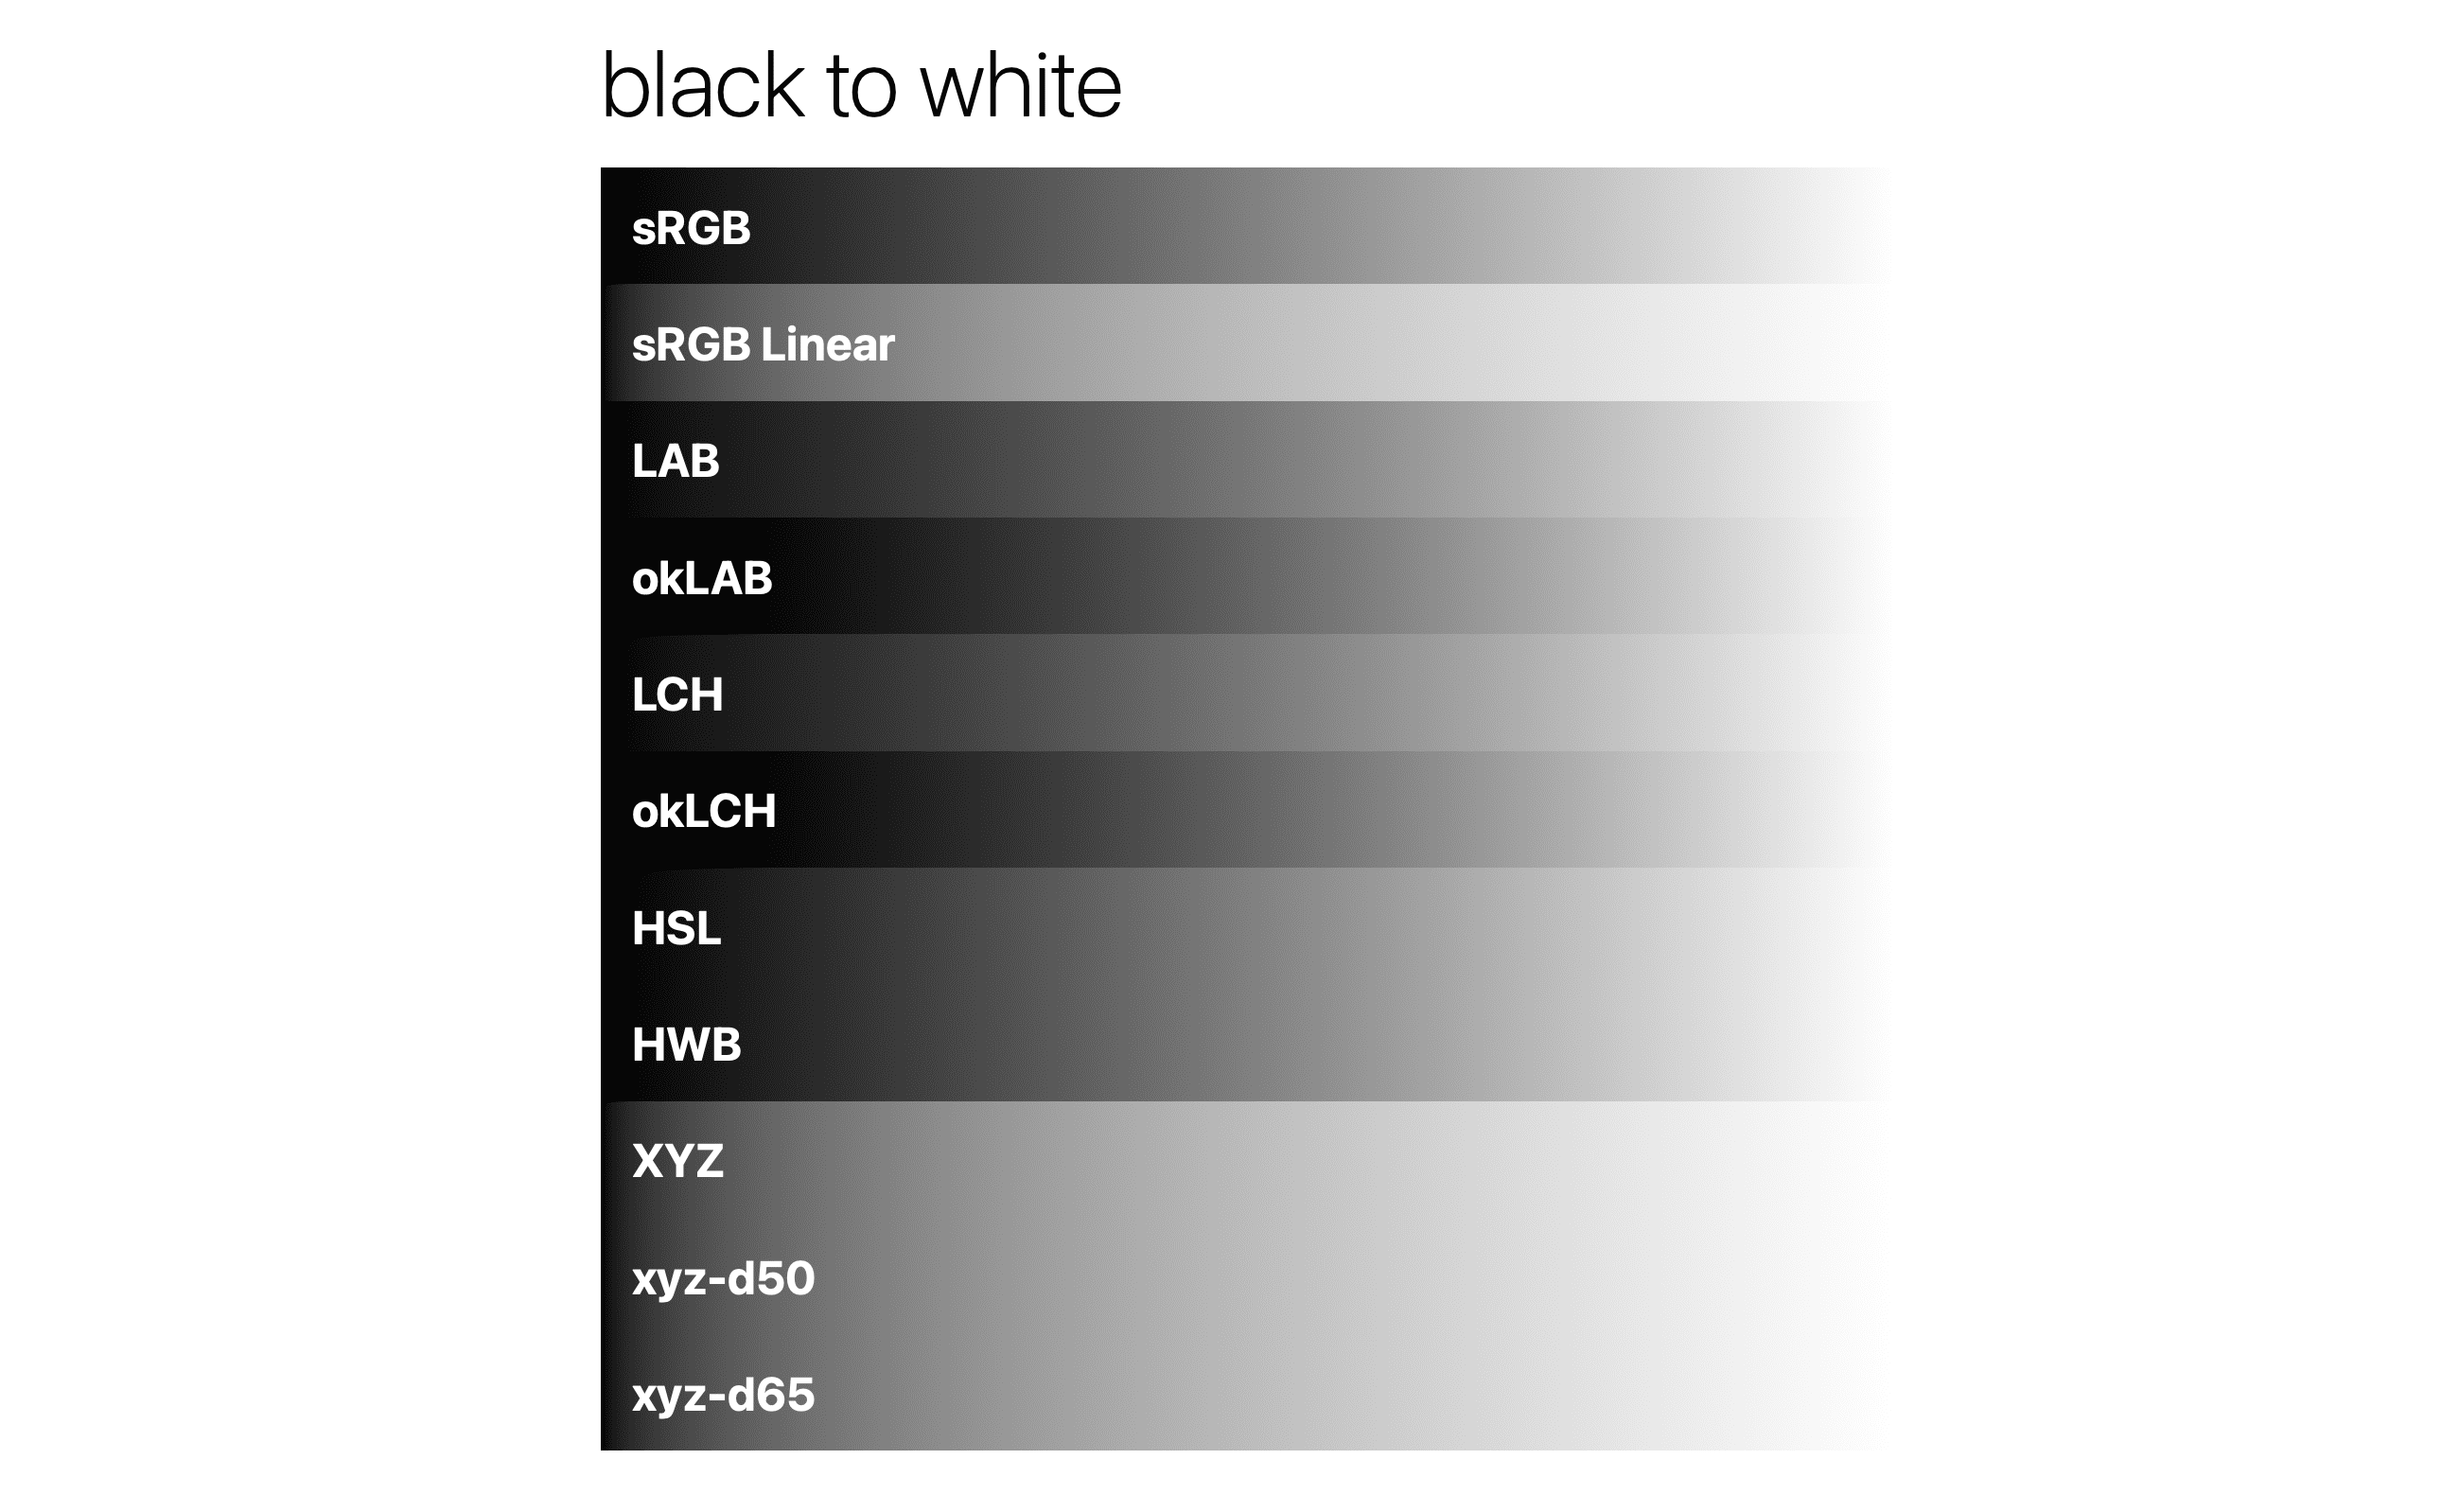 מתבצעת הדרגה של שחור ללבן במרחבי צבעים שונים.